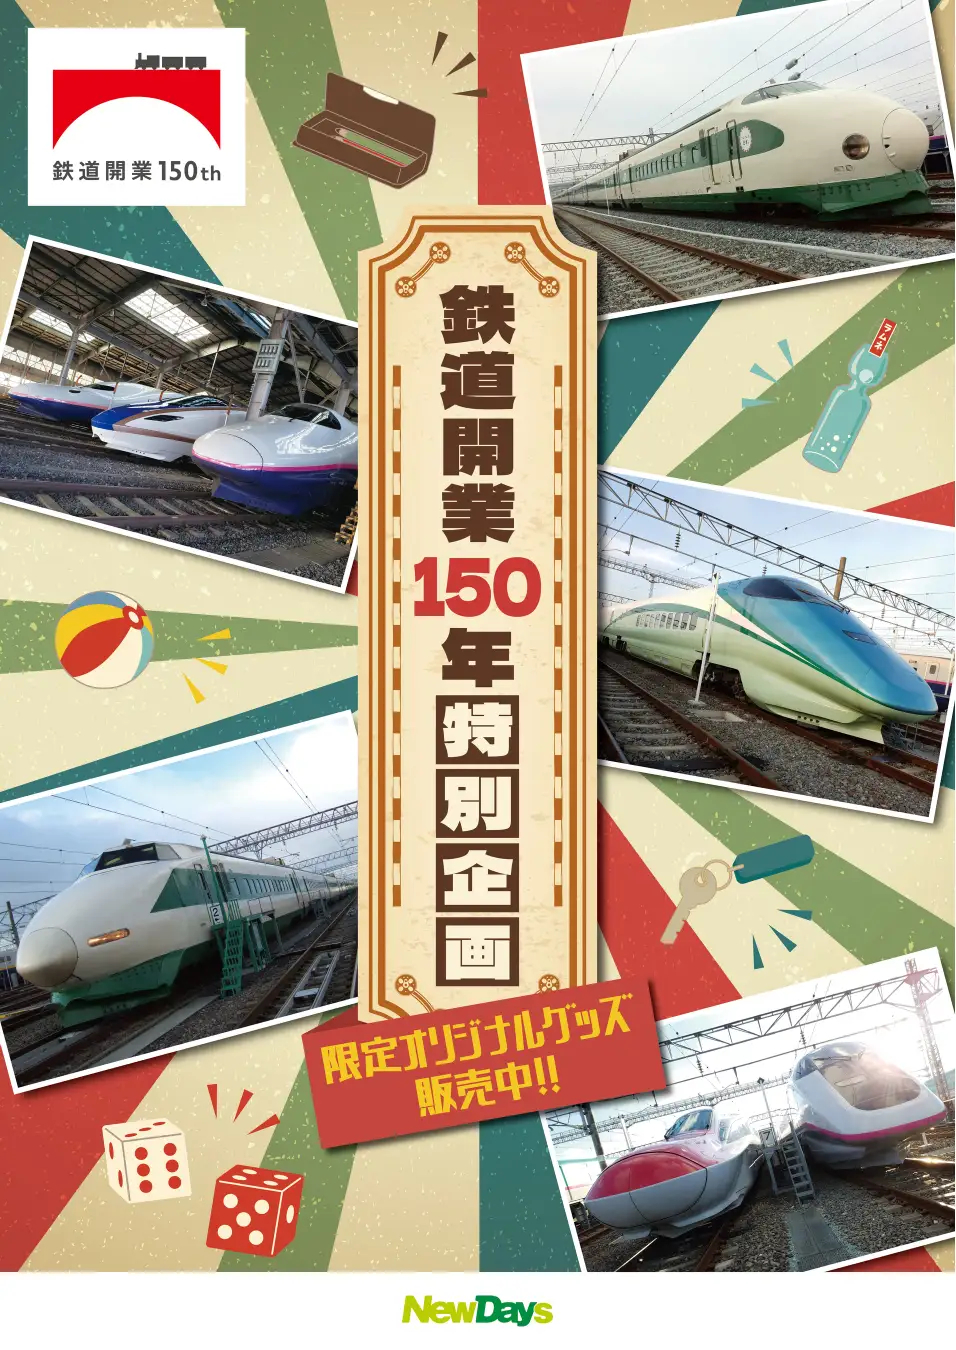 鉄道開業150周年で新幹線グッズや初音ミクコラボグッズを発売